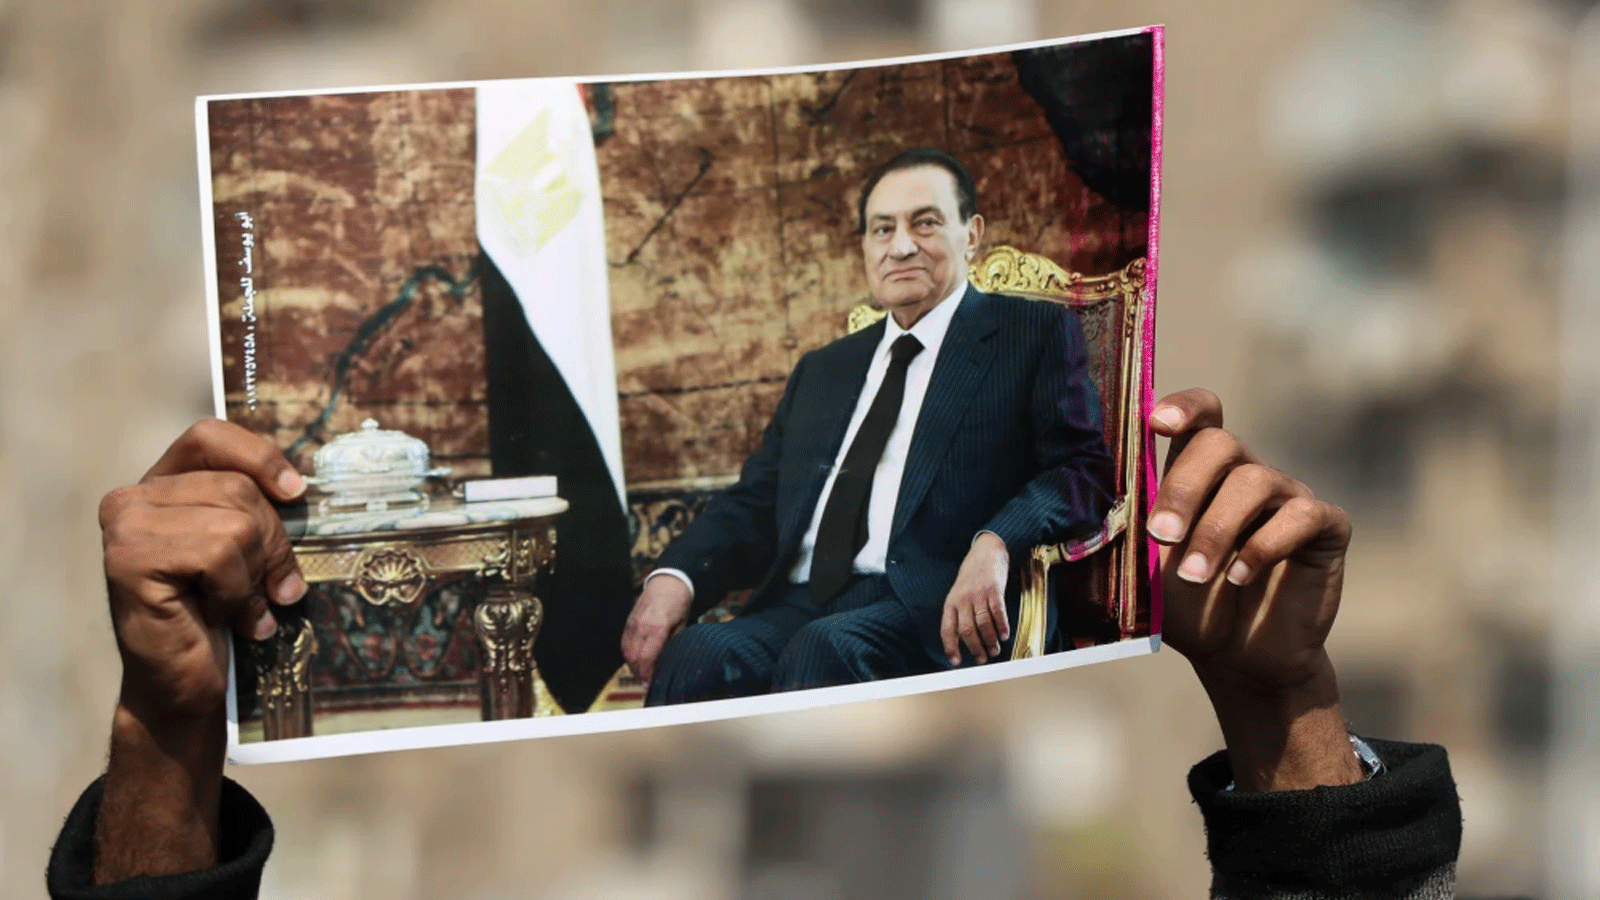 أحد مؤيدي الرئيس المصري الأسبق حسني مبارك يرفع صورة للزعيم الراحل بالقرب من مقبرة العائلة حيث سيدفن في حي مصر الجديدة بالعاصمة القاهرة يوم 26 شباط\ فبراير 2020